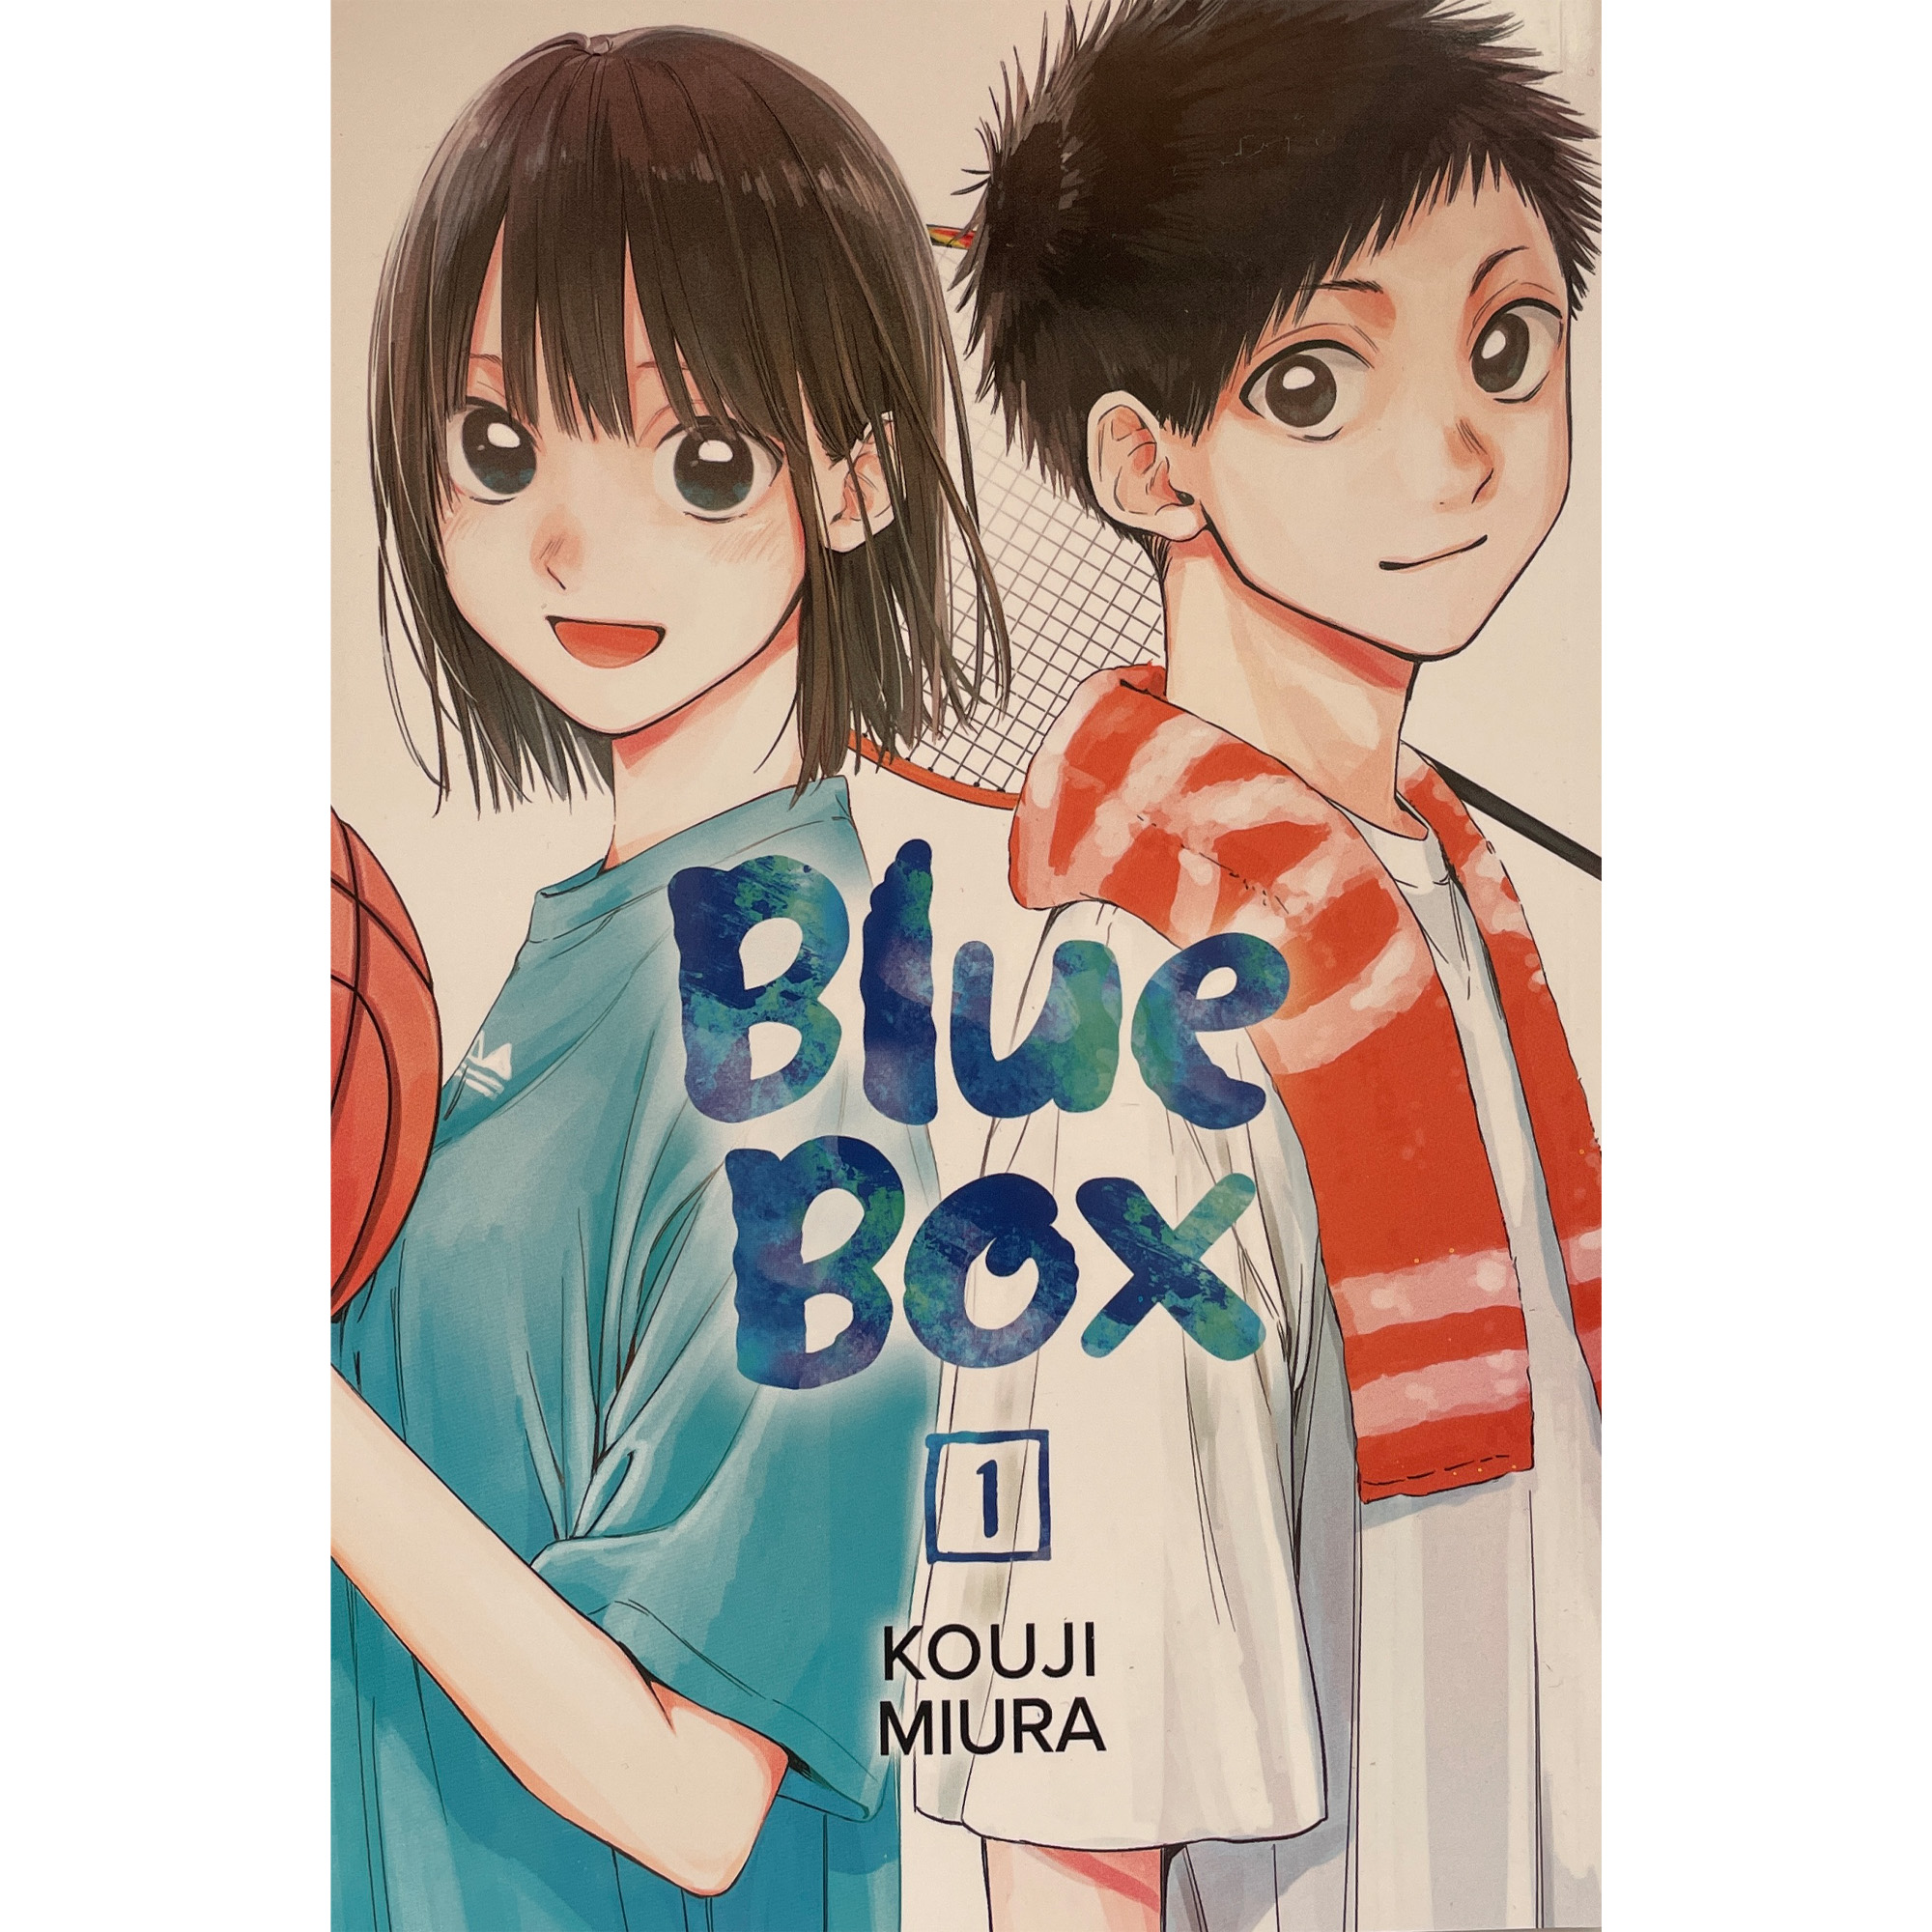 کتاب Blue Box اثر kouji miura انتشارات معیار علم جلد 1